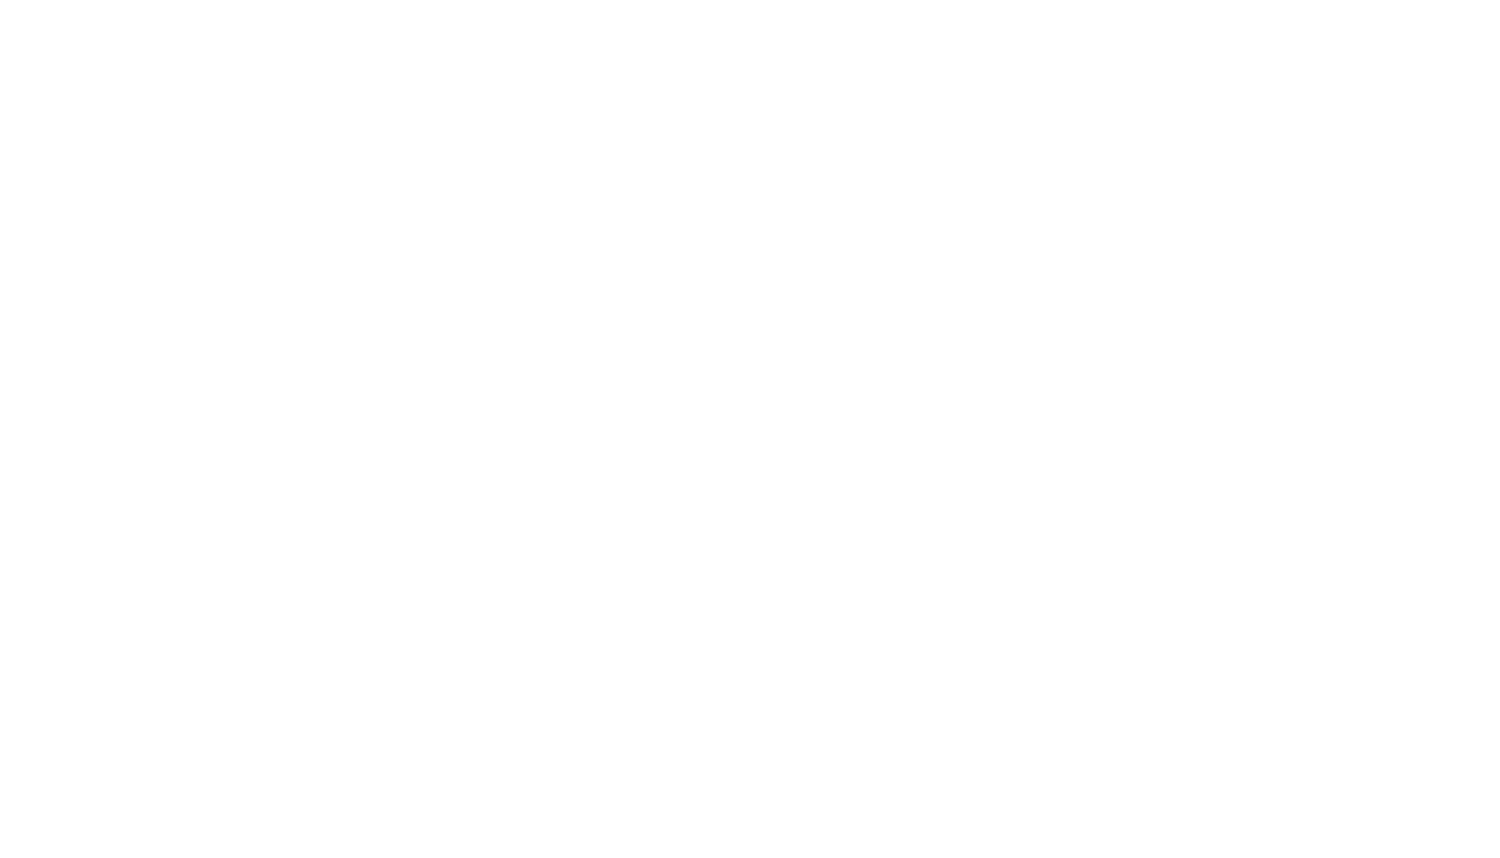 Eat. Play. Sleep.